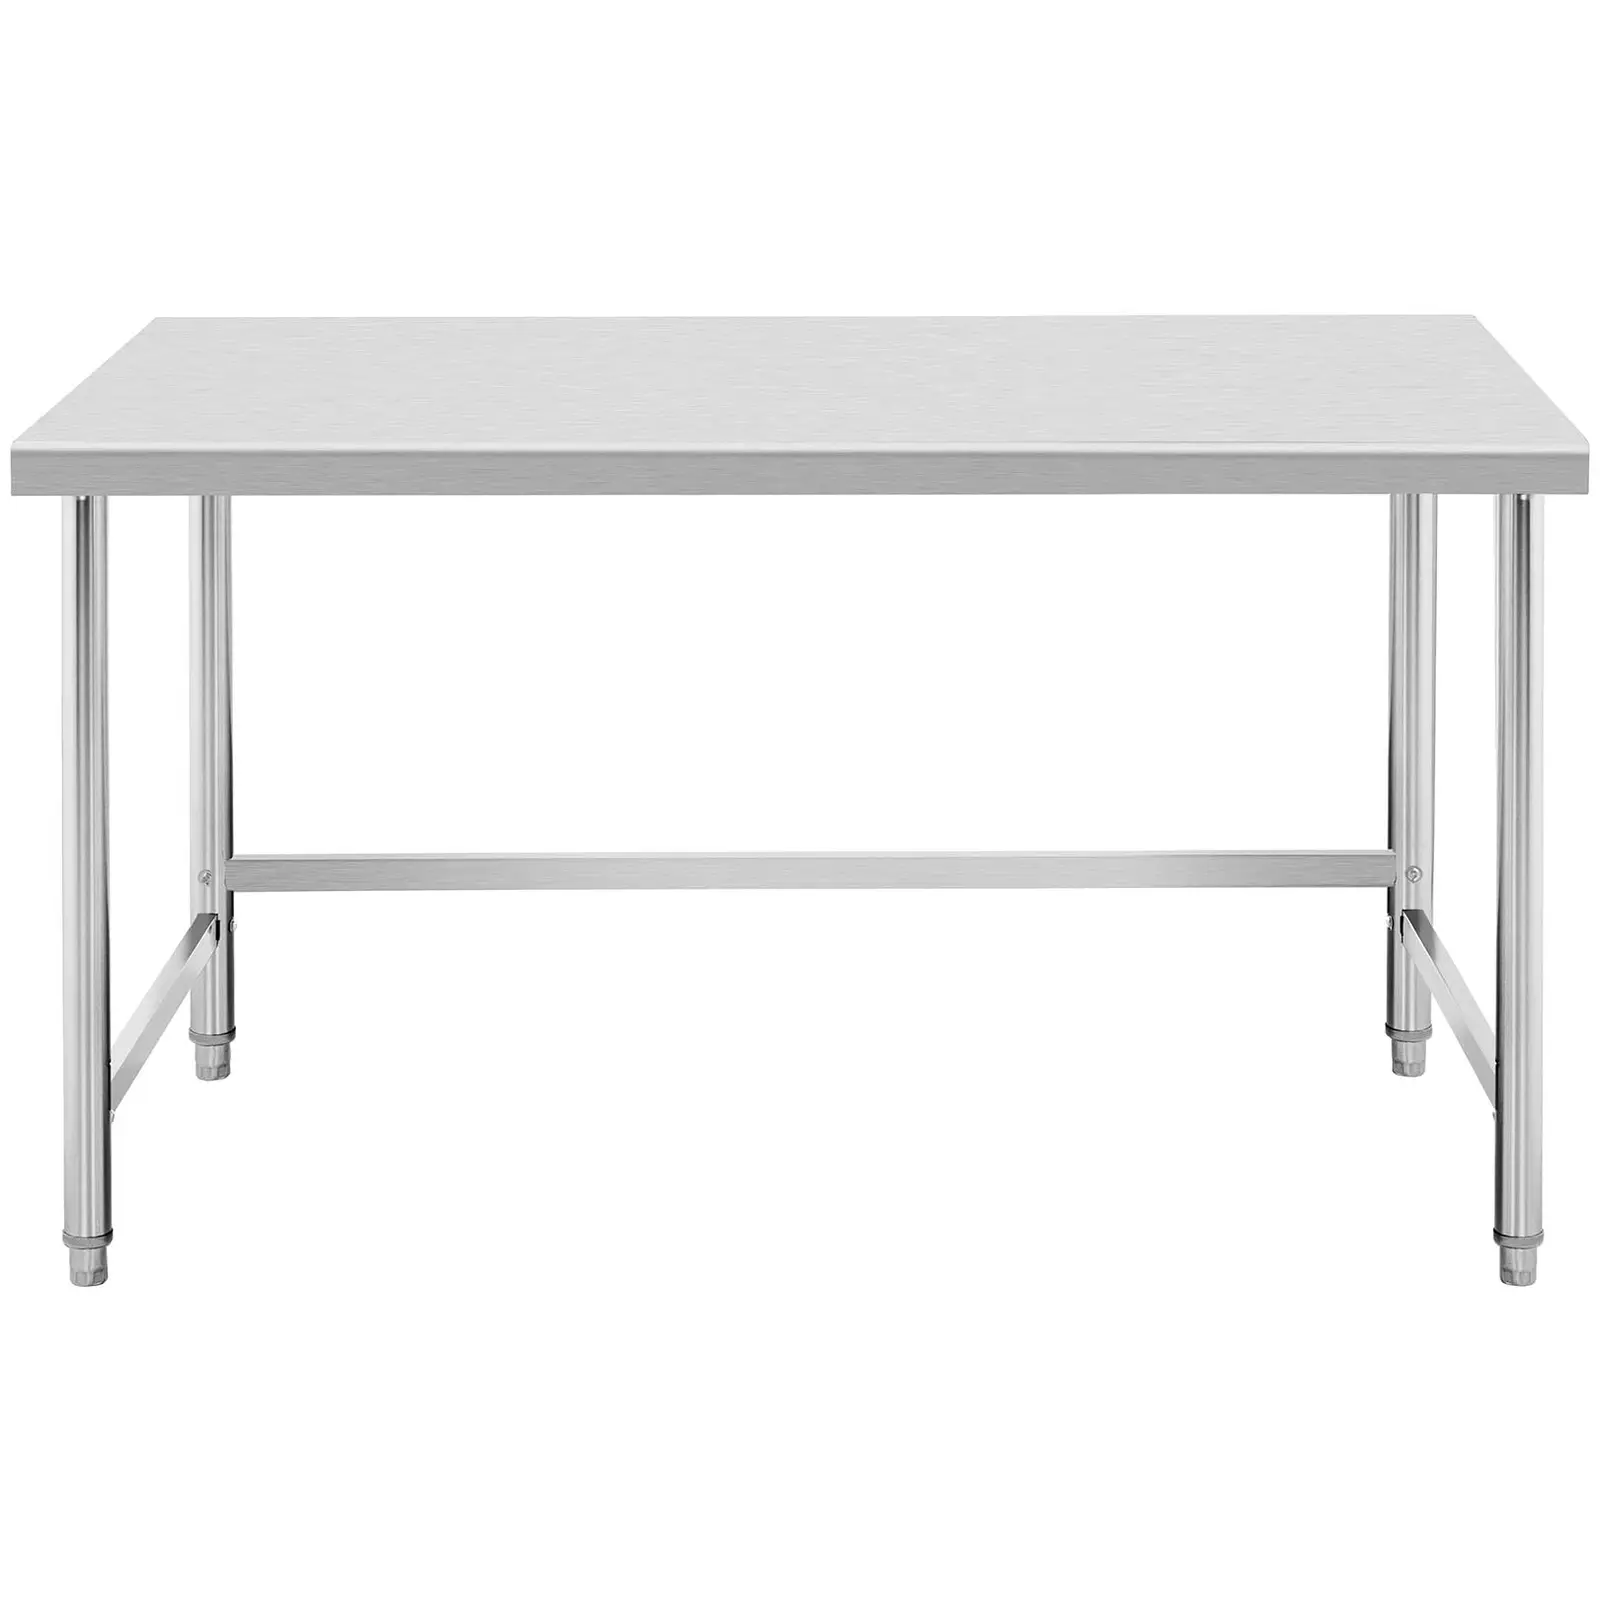 Pracovní stůl z ušlechtilé oceli - 120 x 90 cm - nosnost 95 kg - Royal Catering